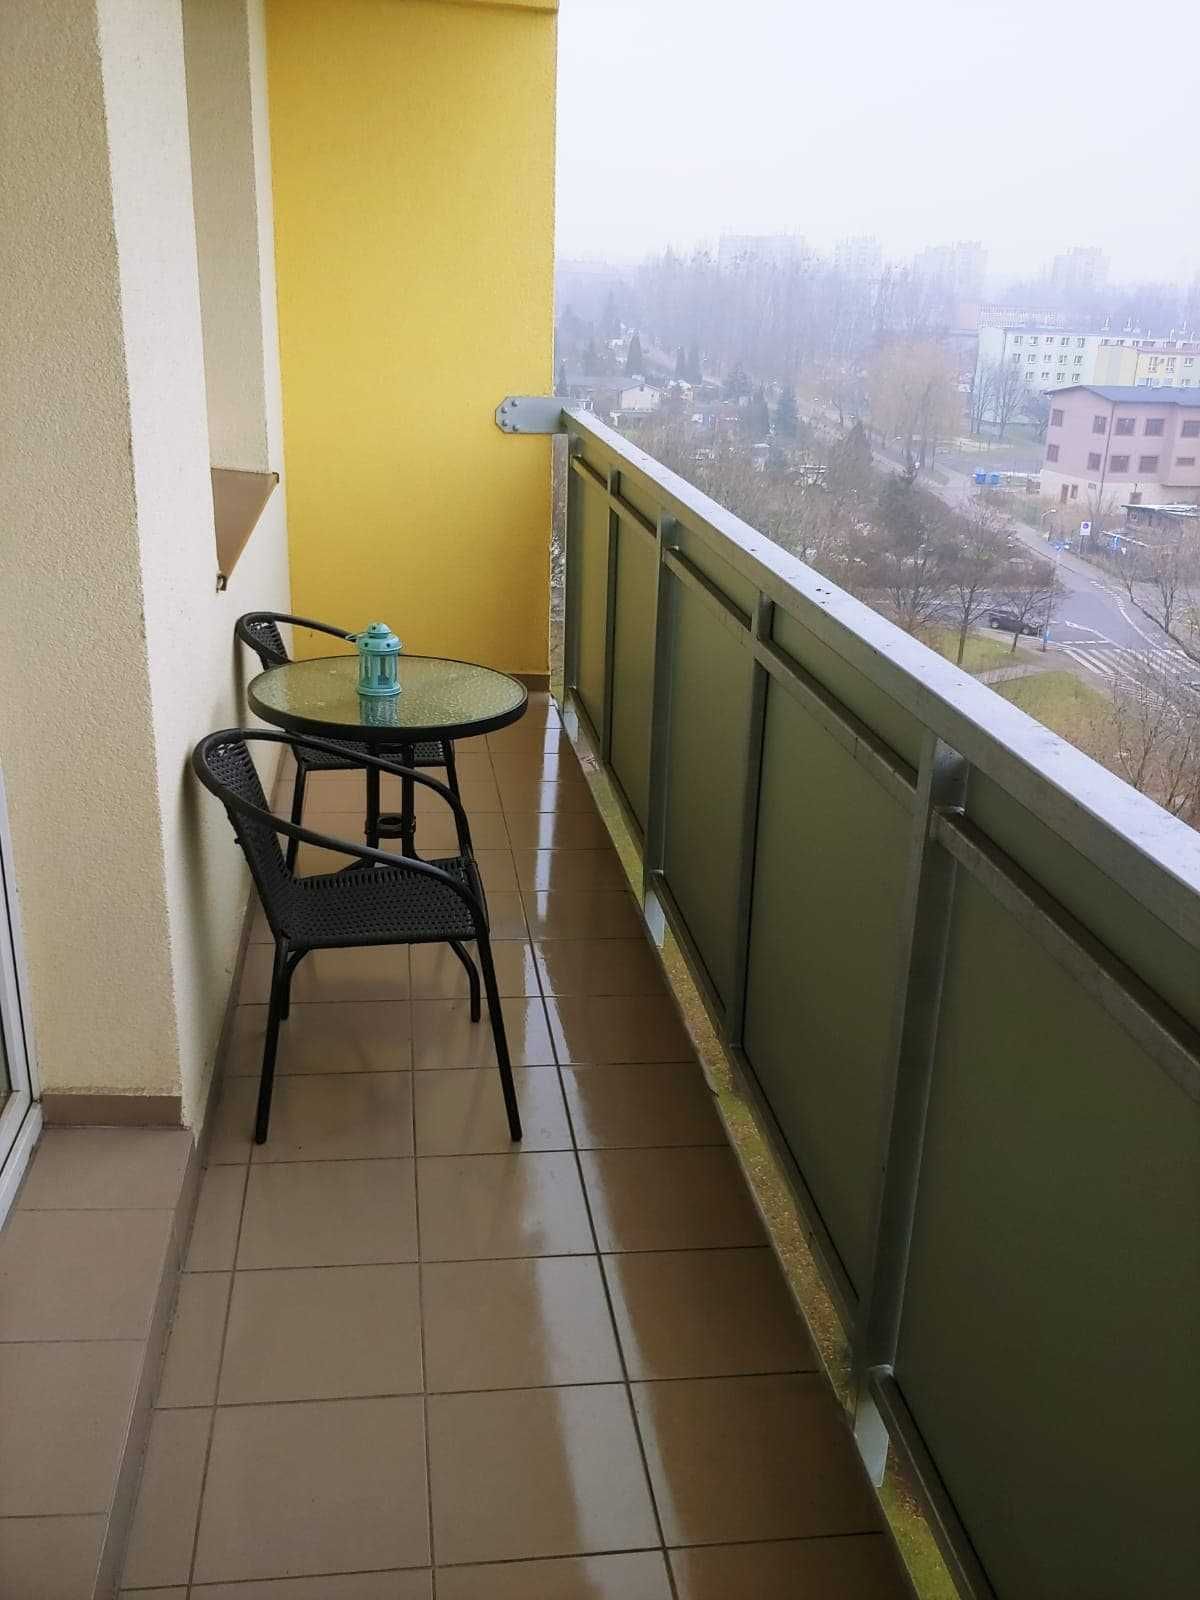 Komfortowe mieszkanie 52m2 z ogrzewaniem miejskim| Ruda Śląska – Wirek